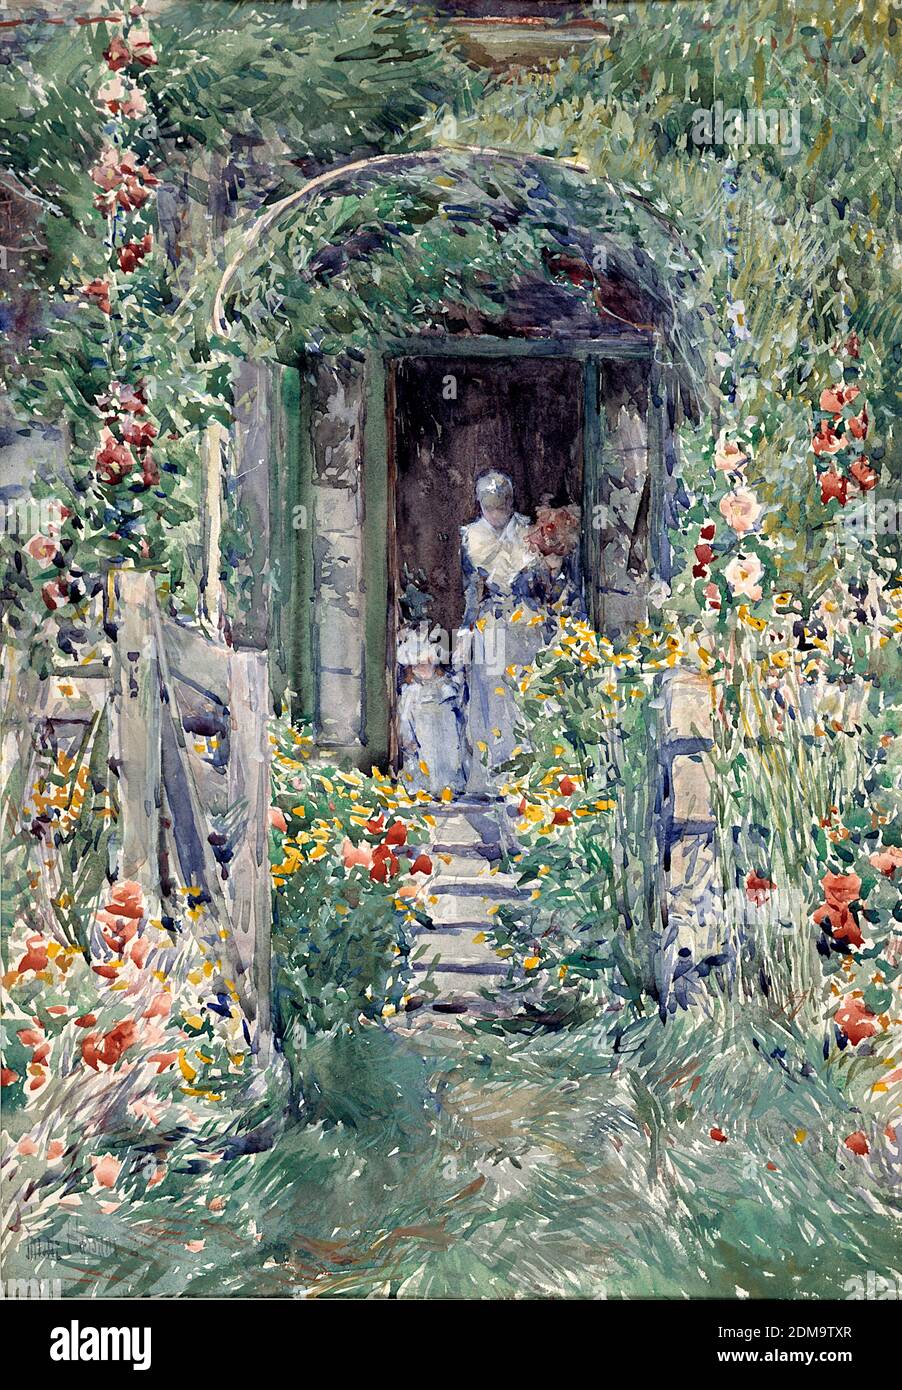 Le jardin dans sa gloire 1892 peinture impressionniste américaine par Childe Hassam - très haute résolution et image de qualité Banque D'Images